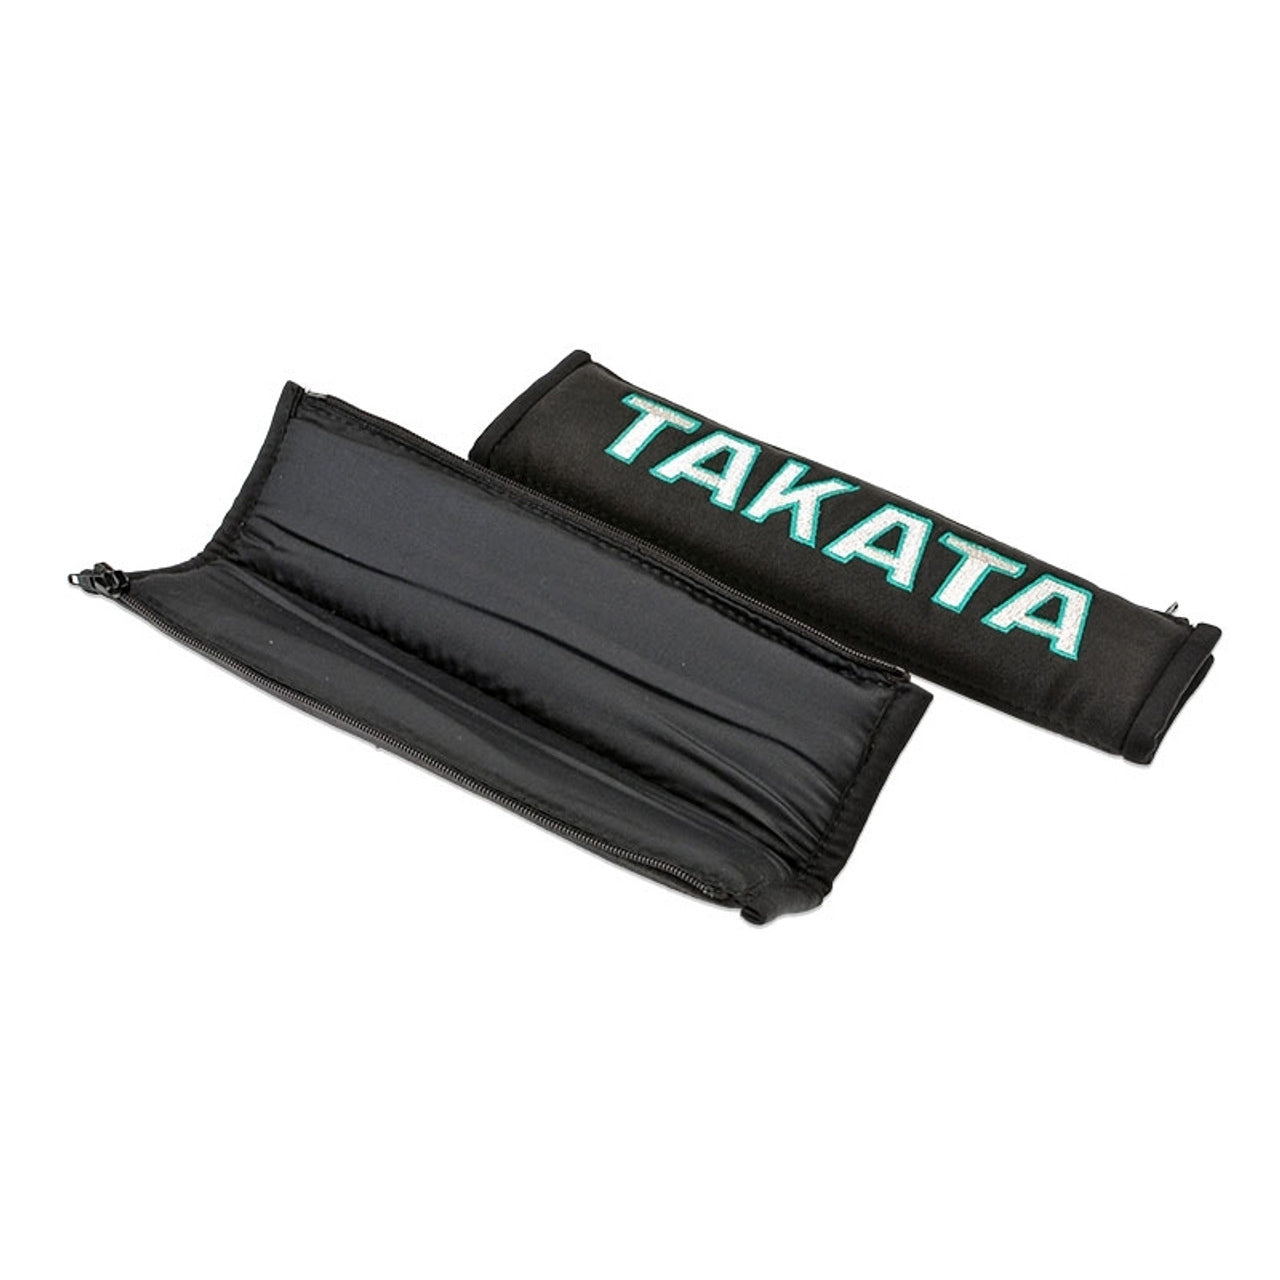 A pair of Takata comfort seat belt shoulder pads in black.